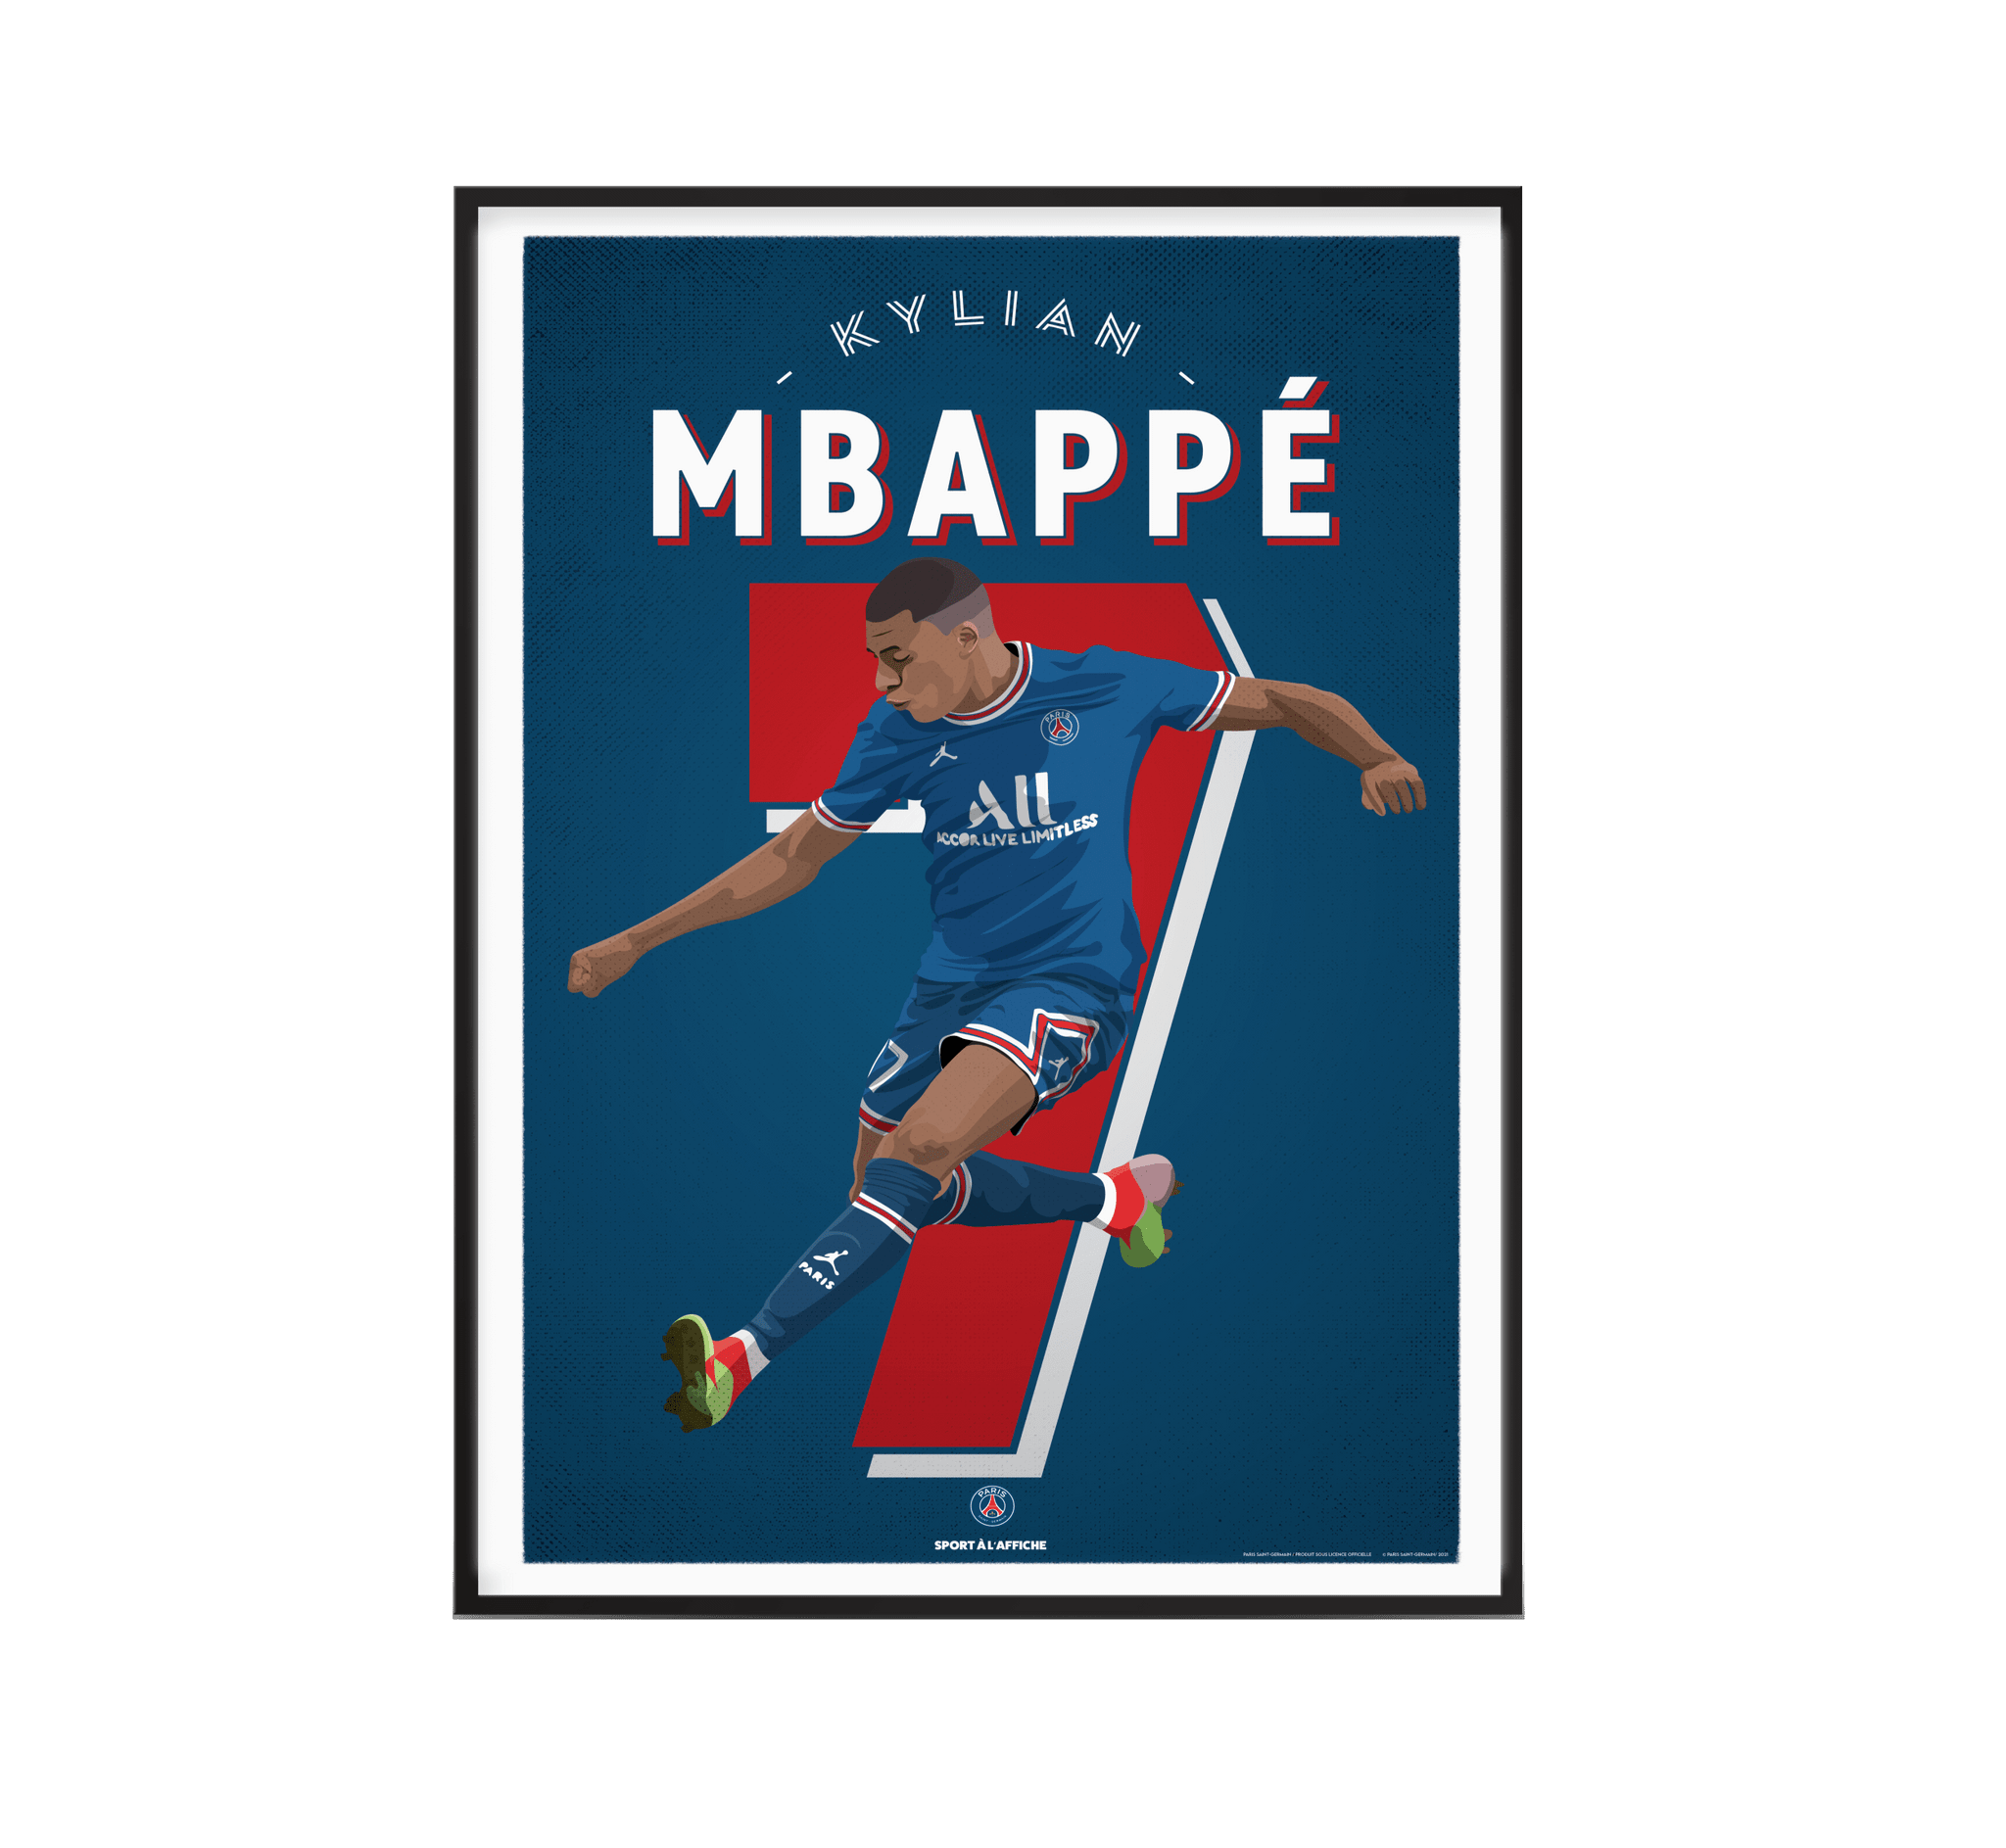 Affiche Football PSG - Maillots Historiques 40 x 60 cm PSG